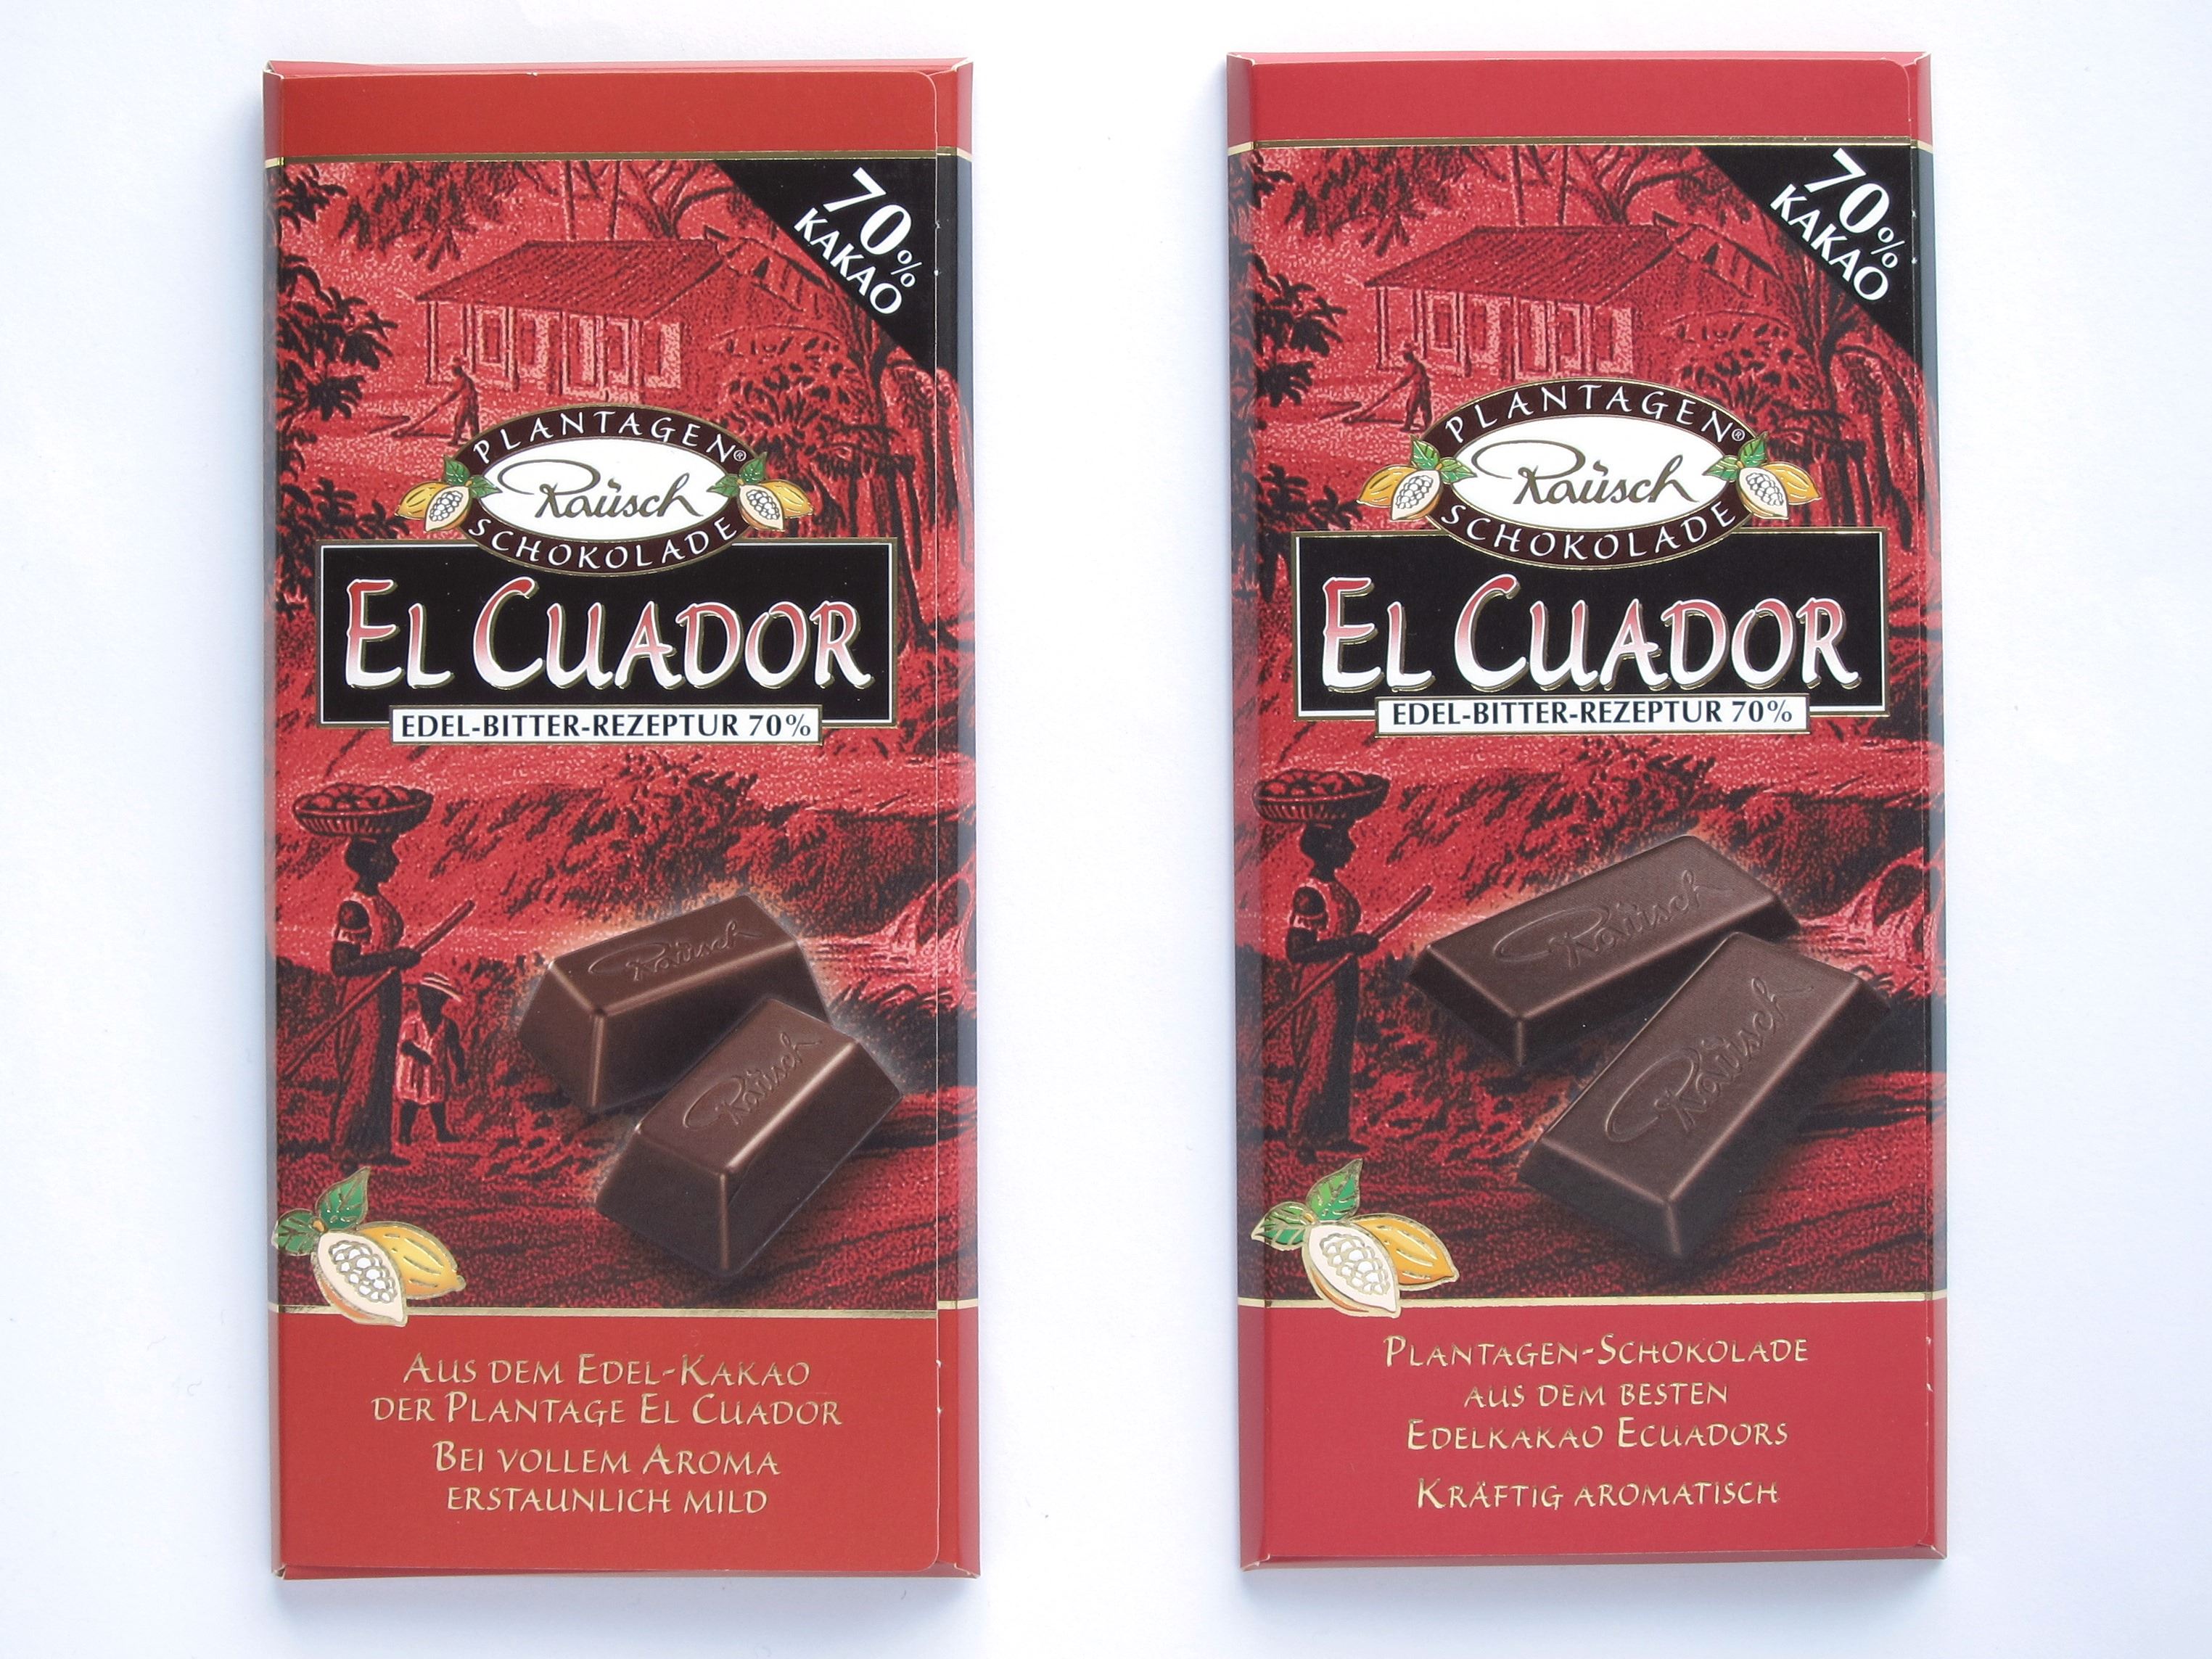 Rausch Plantagenschokolade El Cuador, 2 Tafeln